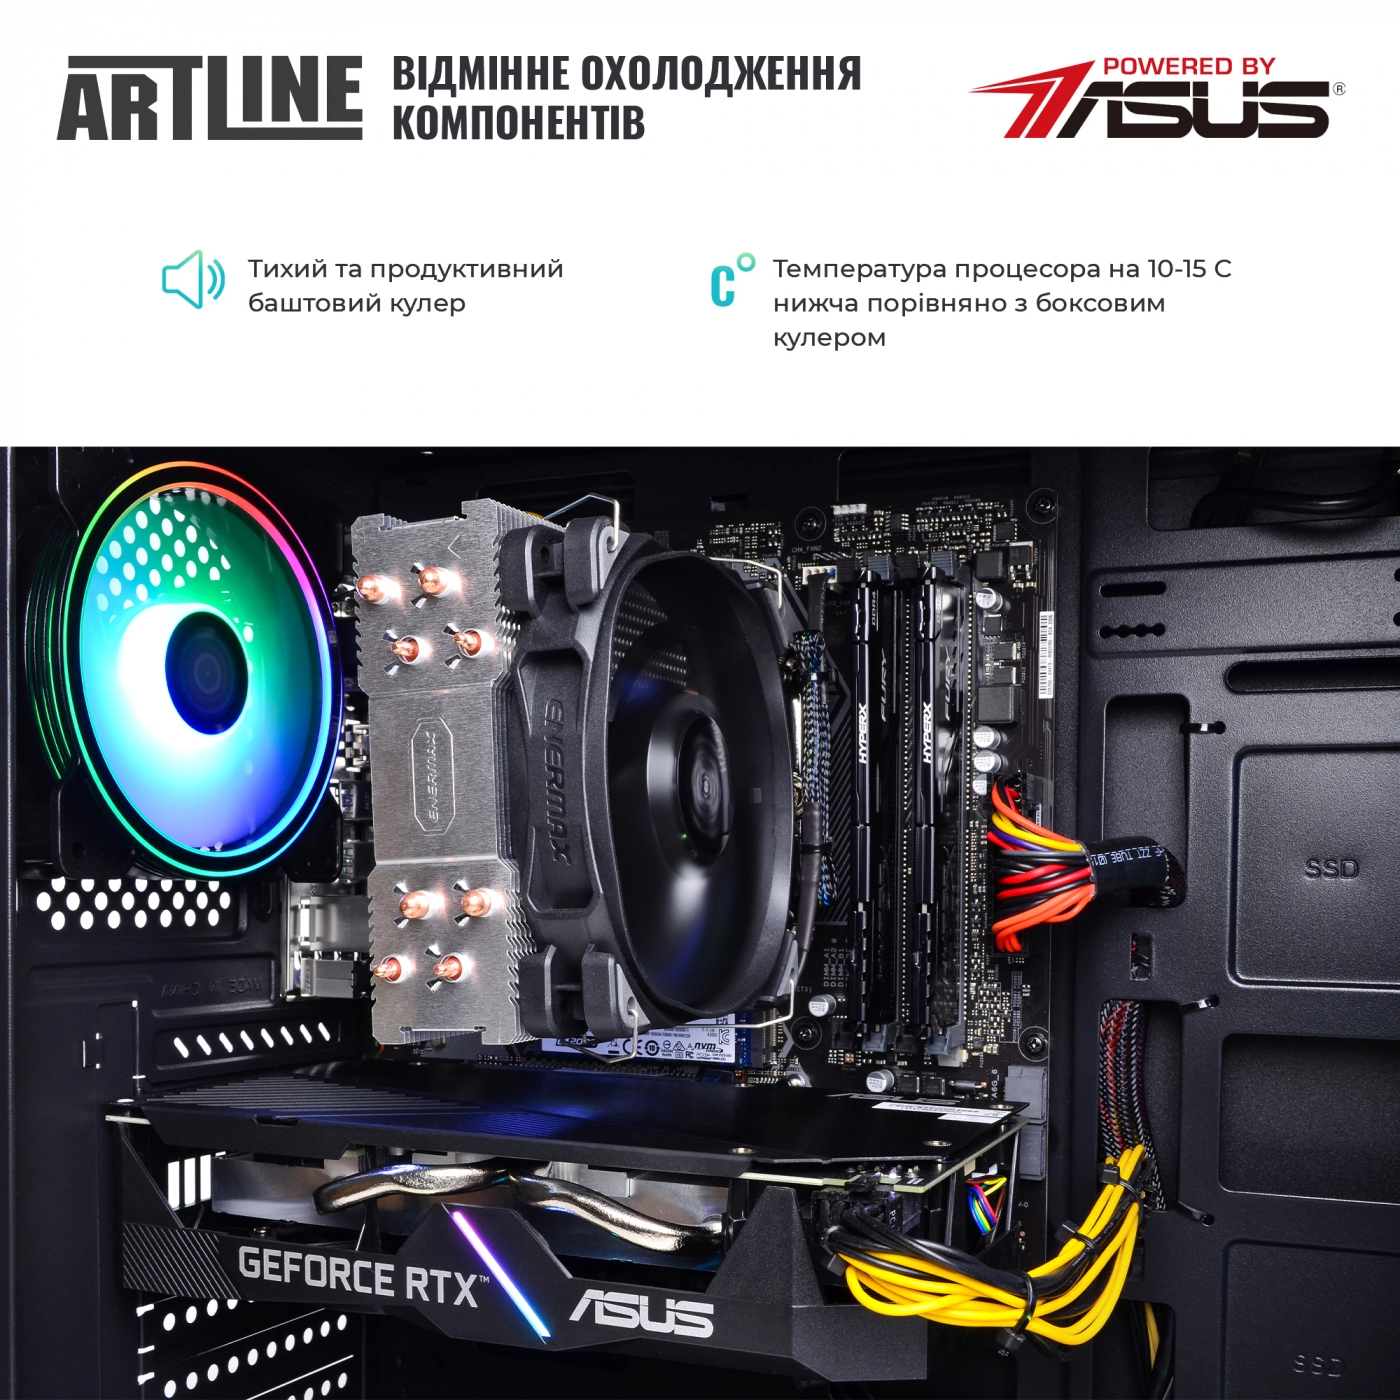 Купить Компьютер ARTLINE Gaming X75v24 - фото 7